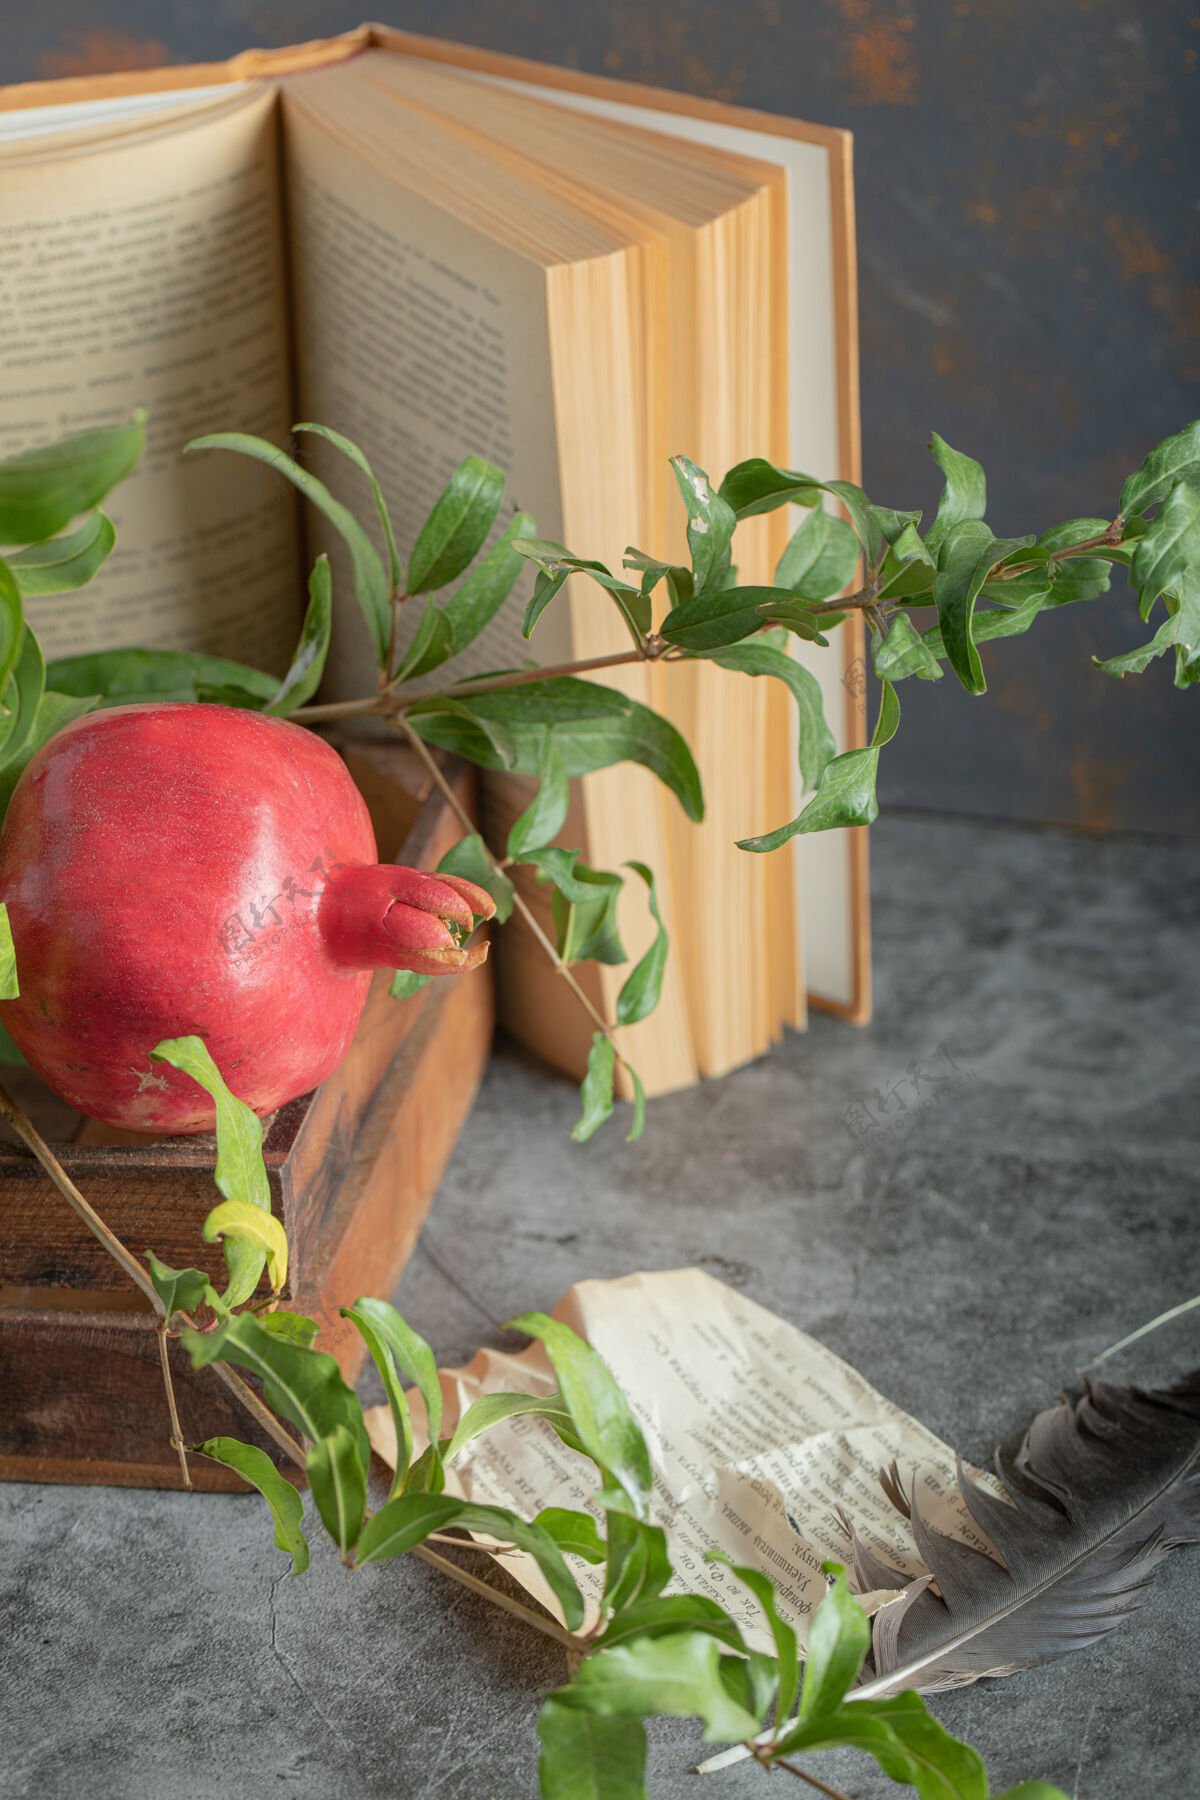 水果红石榴装在木箱里 里面有书和叶子石榴新鲜页面